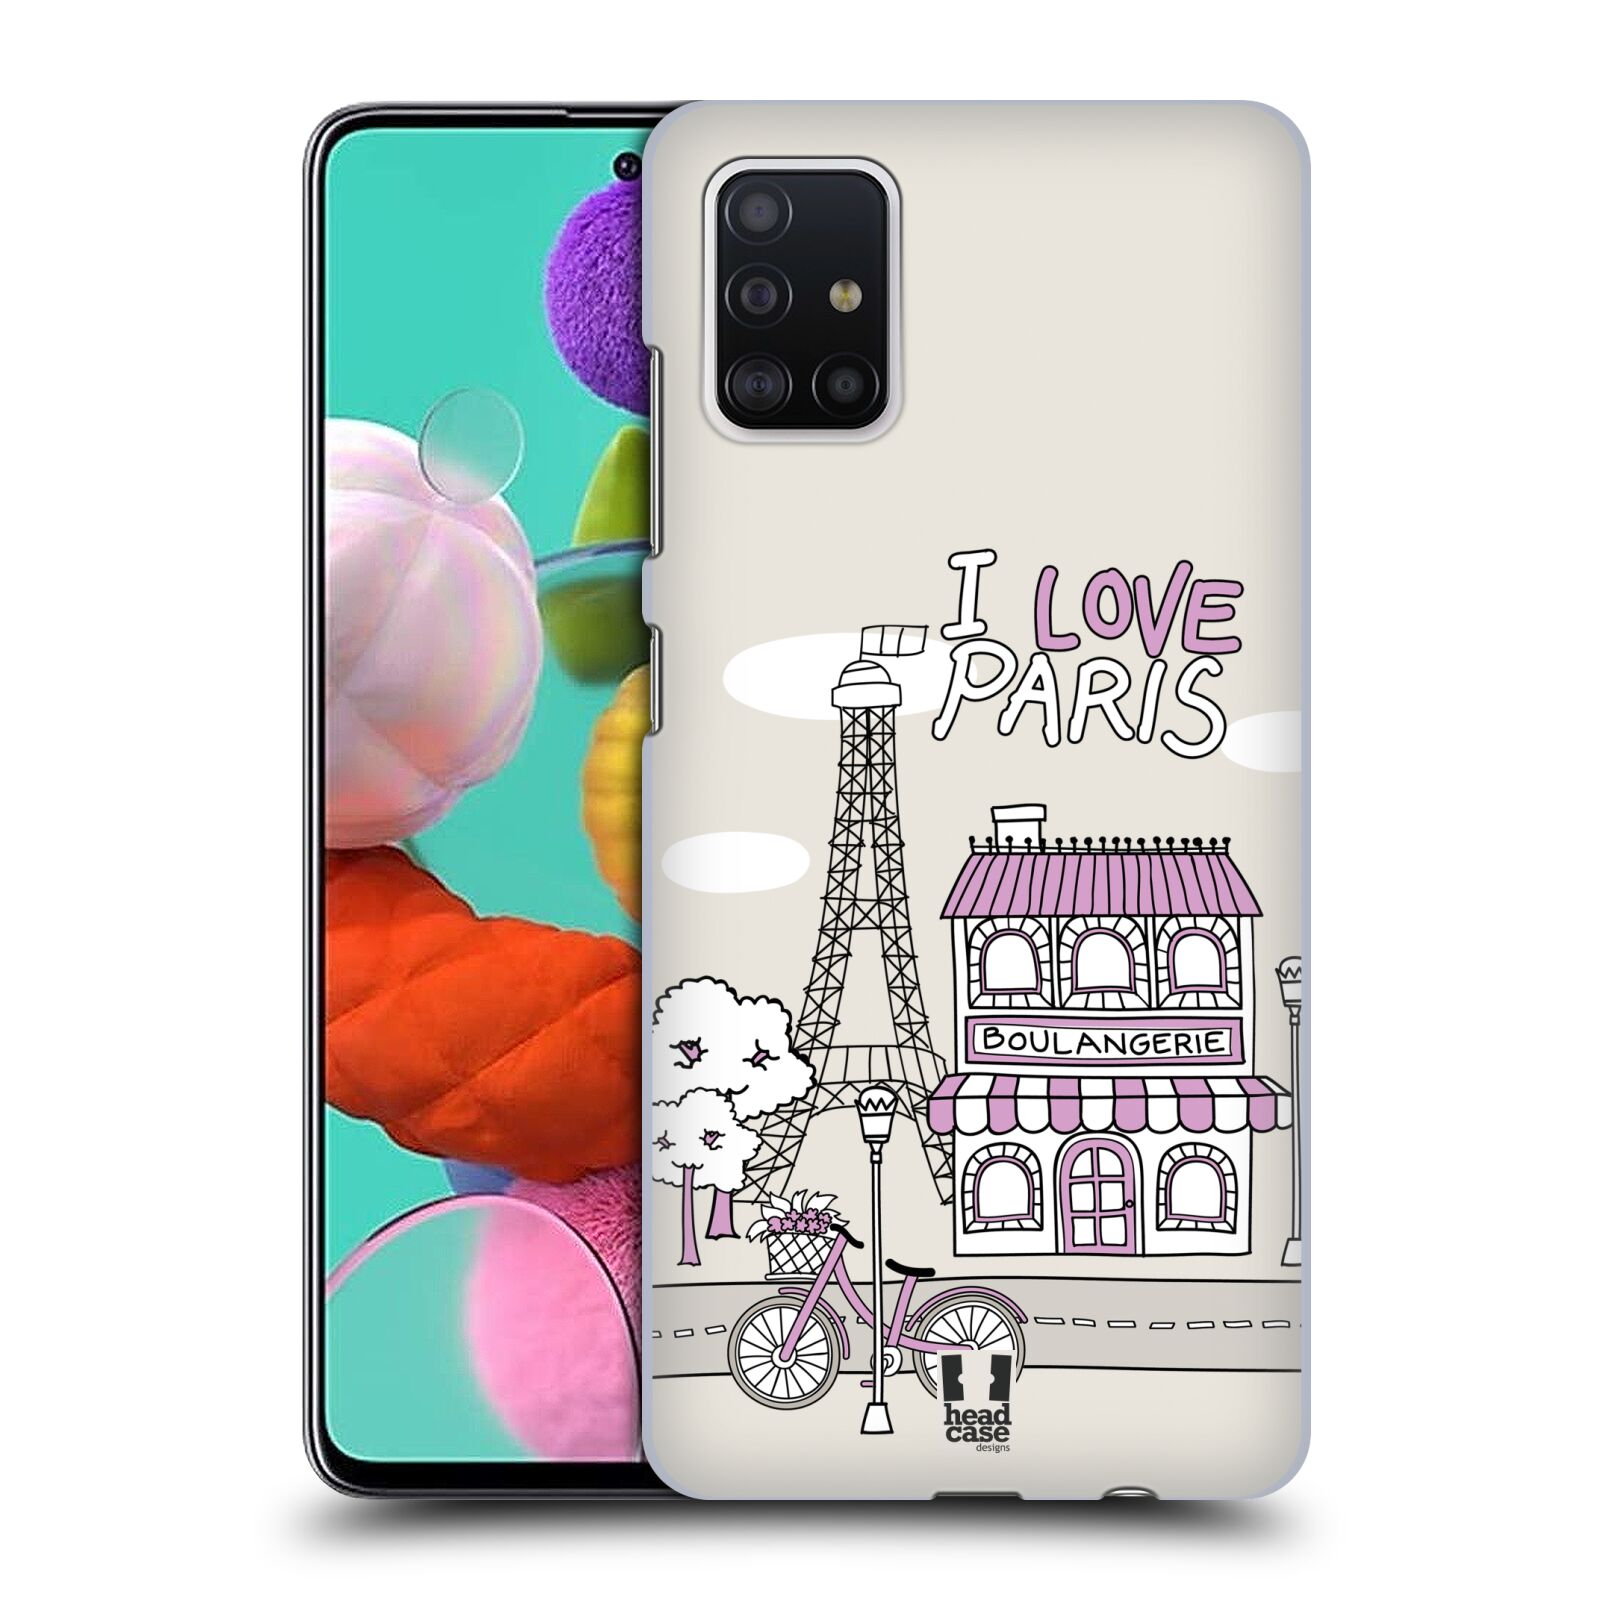 Pouzdro na mobil Samsung Galaxy A51 - HEAD CASE - vzor Kreslená městečka FIALOVÁ, Paříž, Francie, I LOVE PARIS